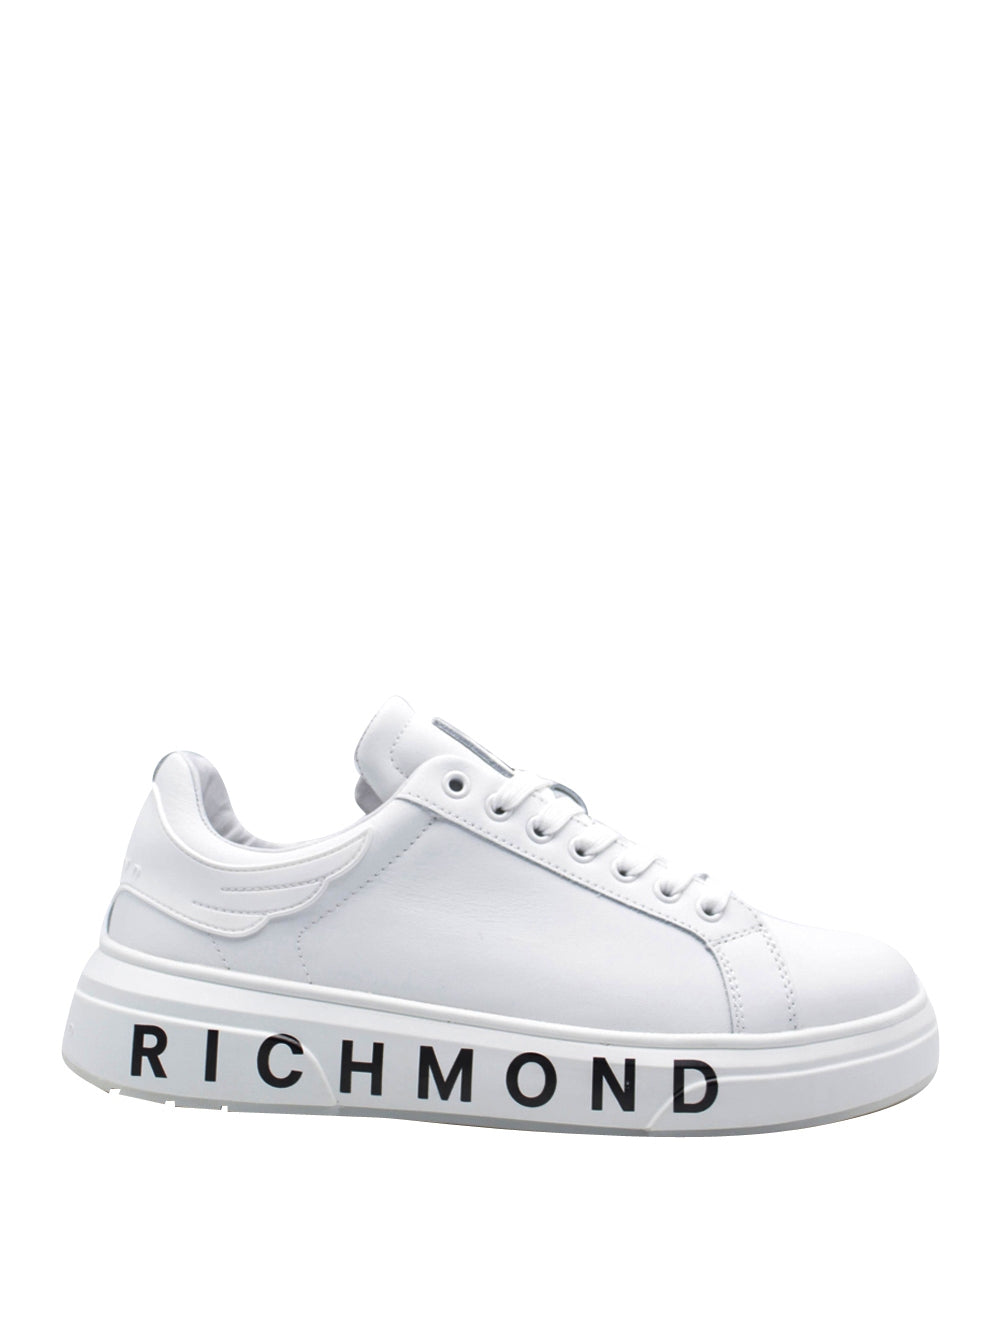 RICHMOND Sneakers Uomo - Bianco modello 20009/CP